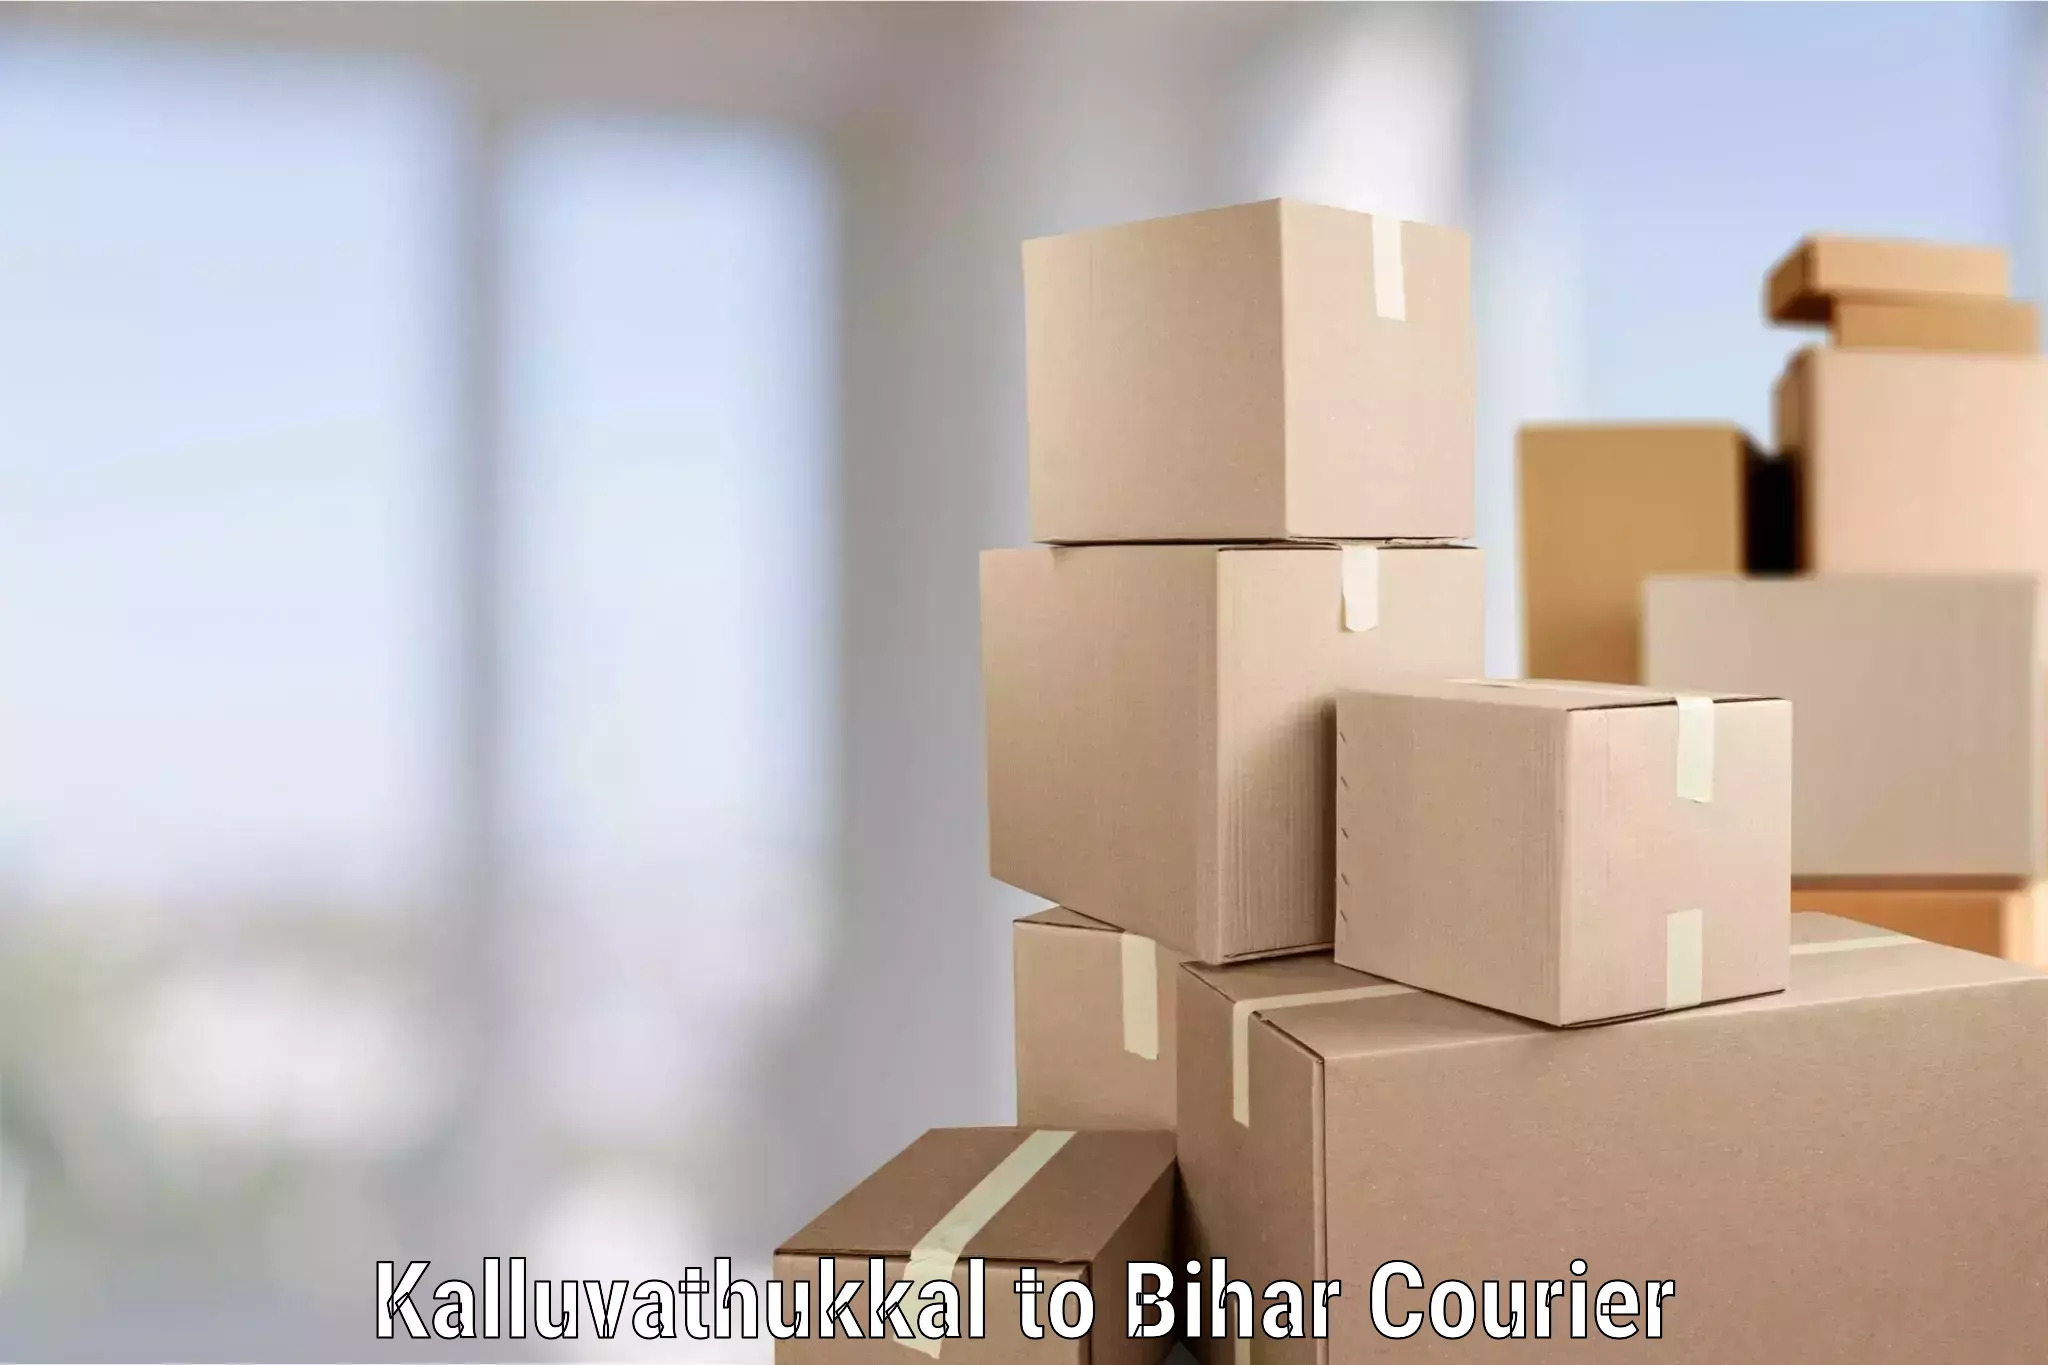 Trusted furniture movers Kalluvathukkal to Rajpur